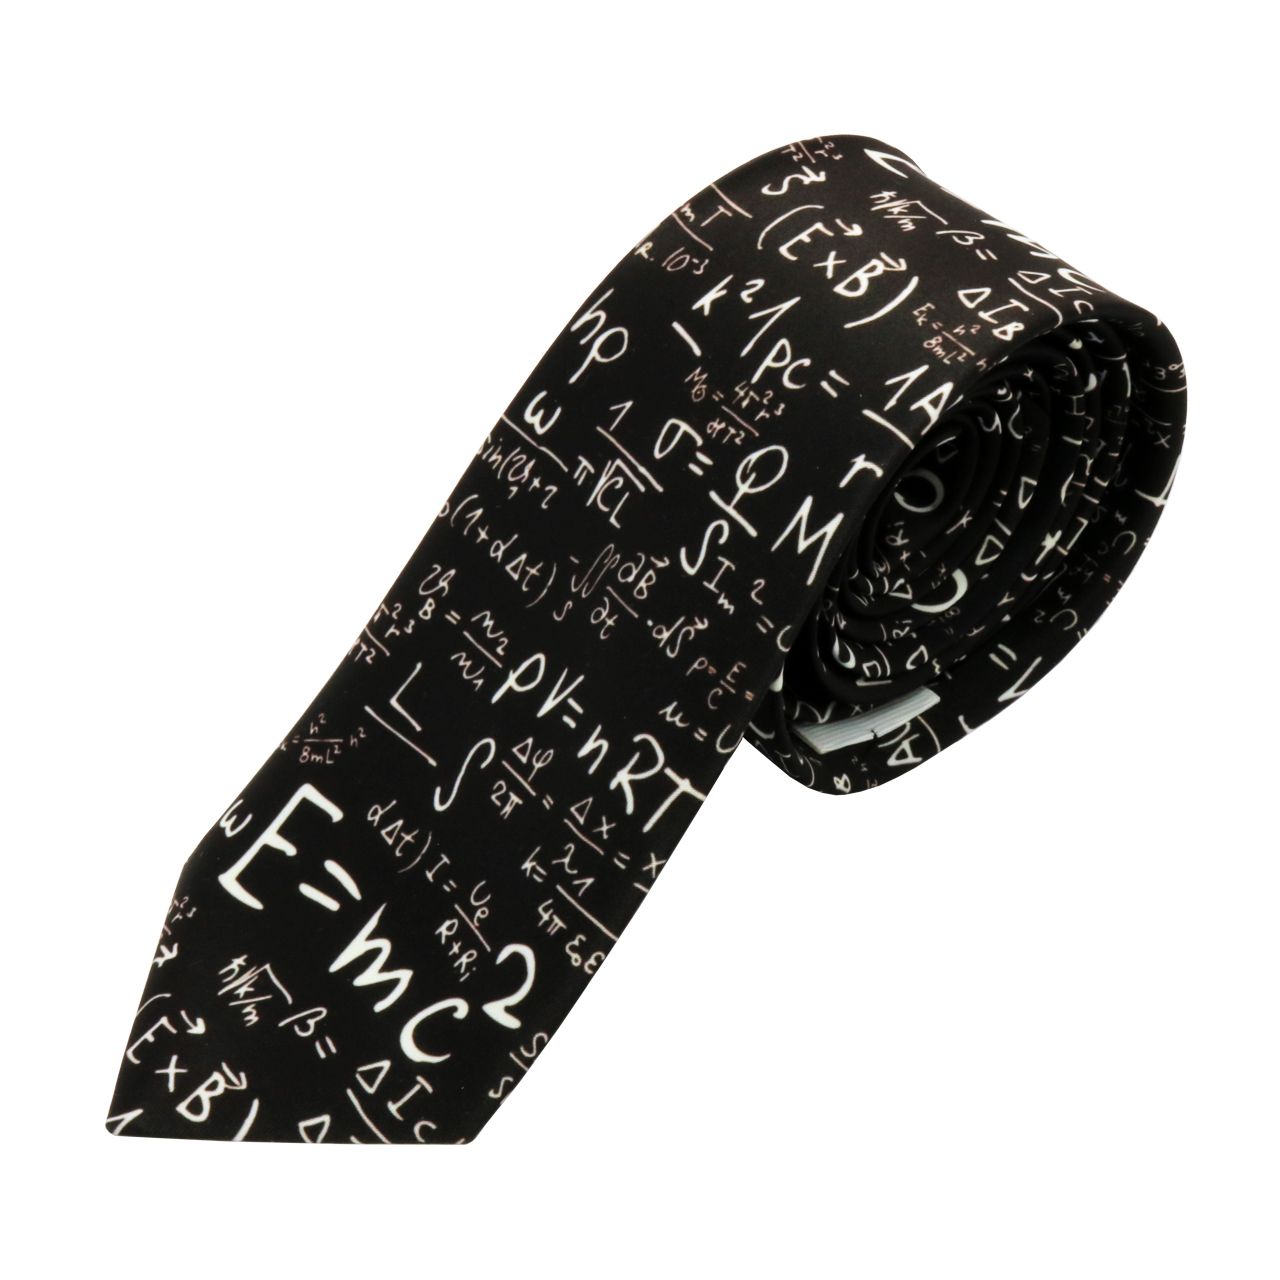 کراوات مردانه طرح فیزیک -  - 1